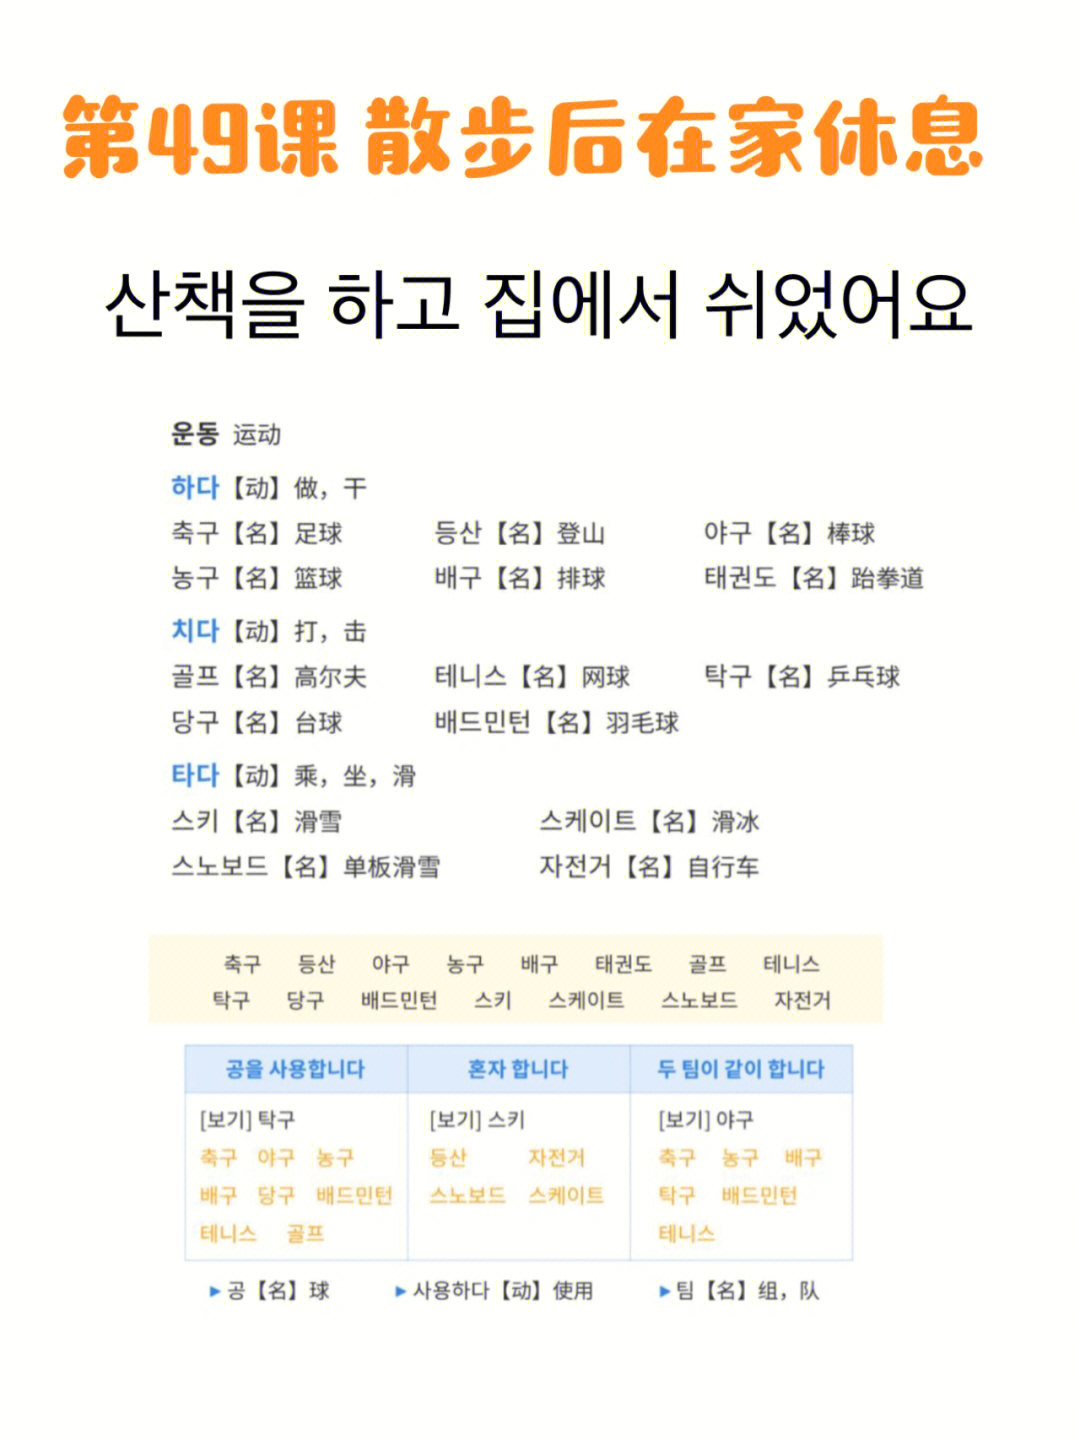 韩语初级学习打卡第65天